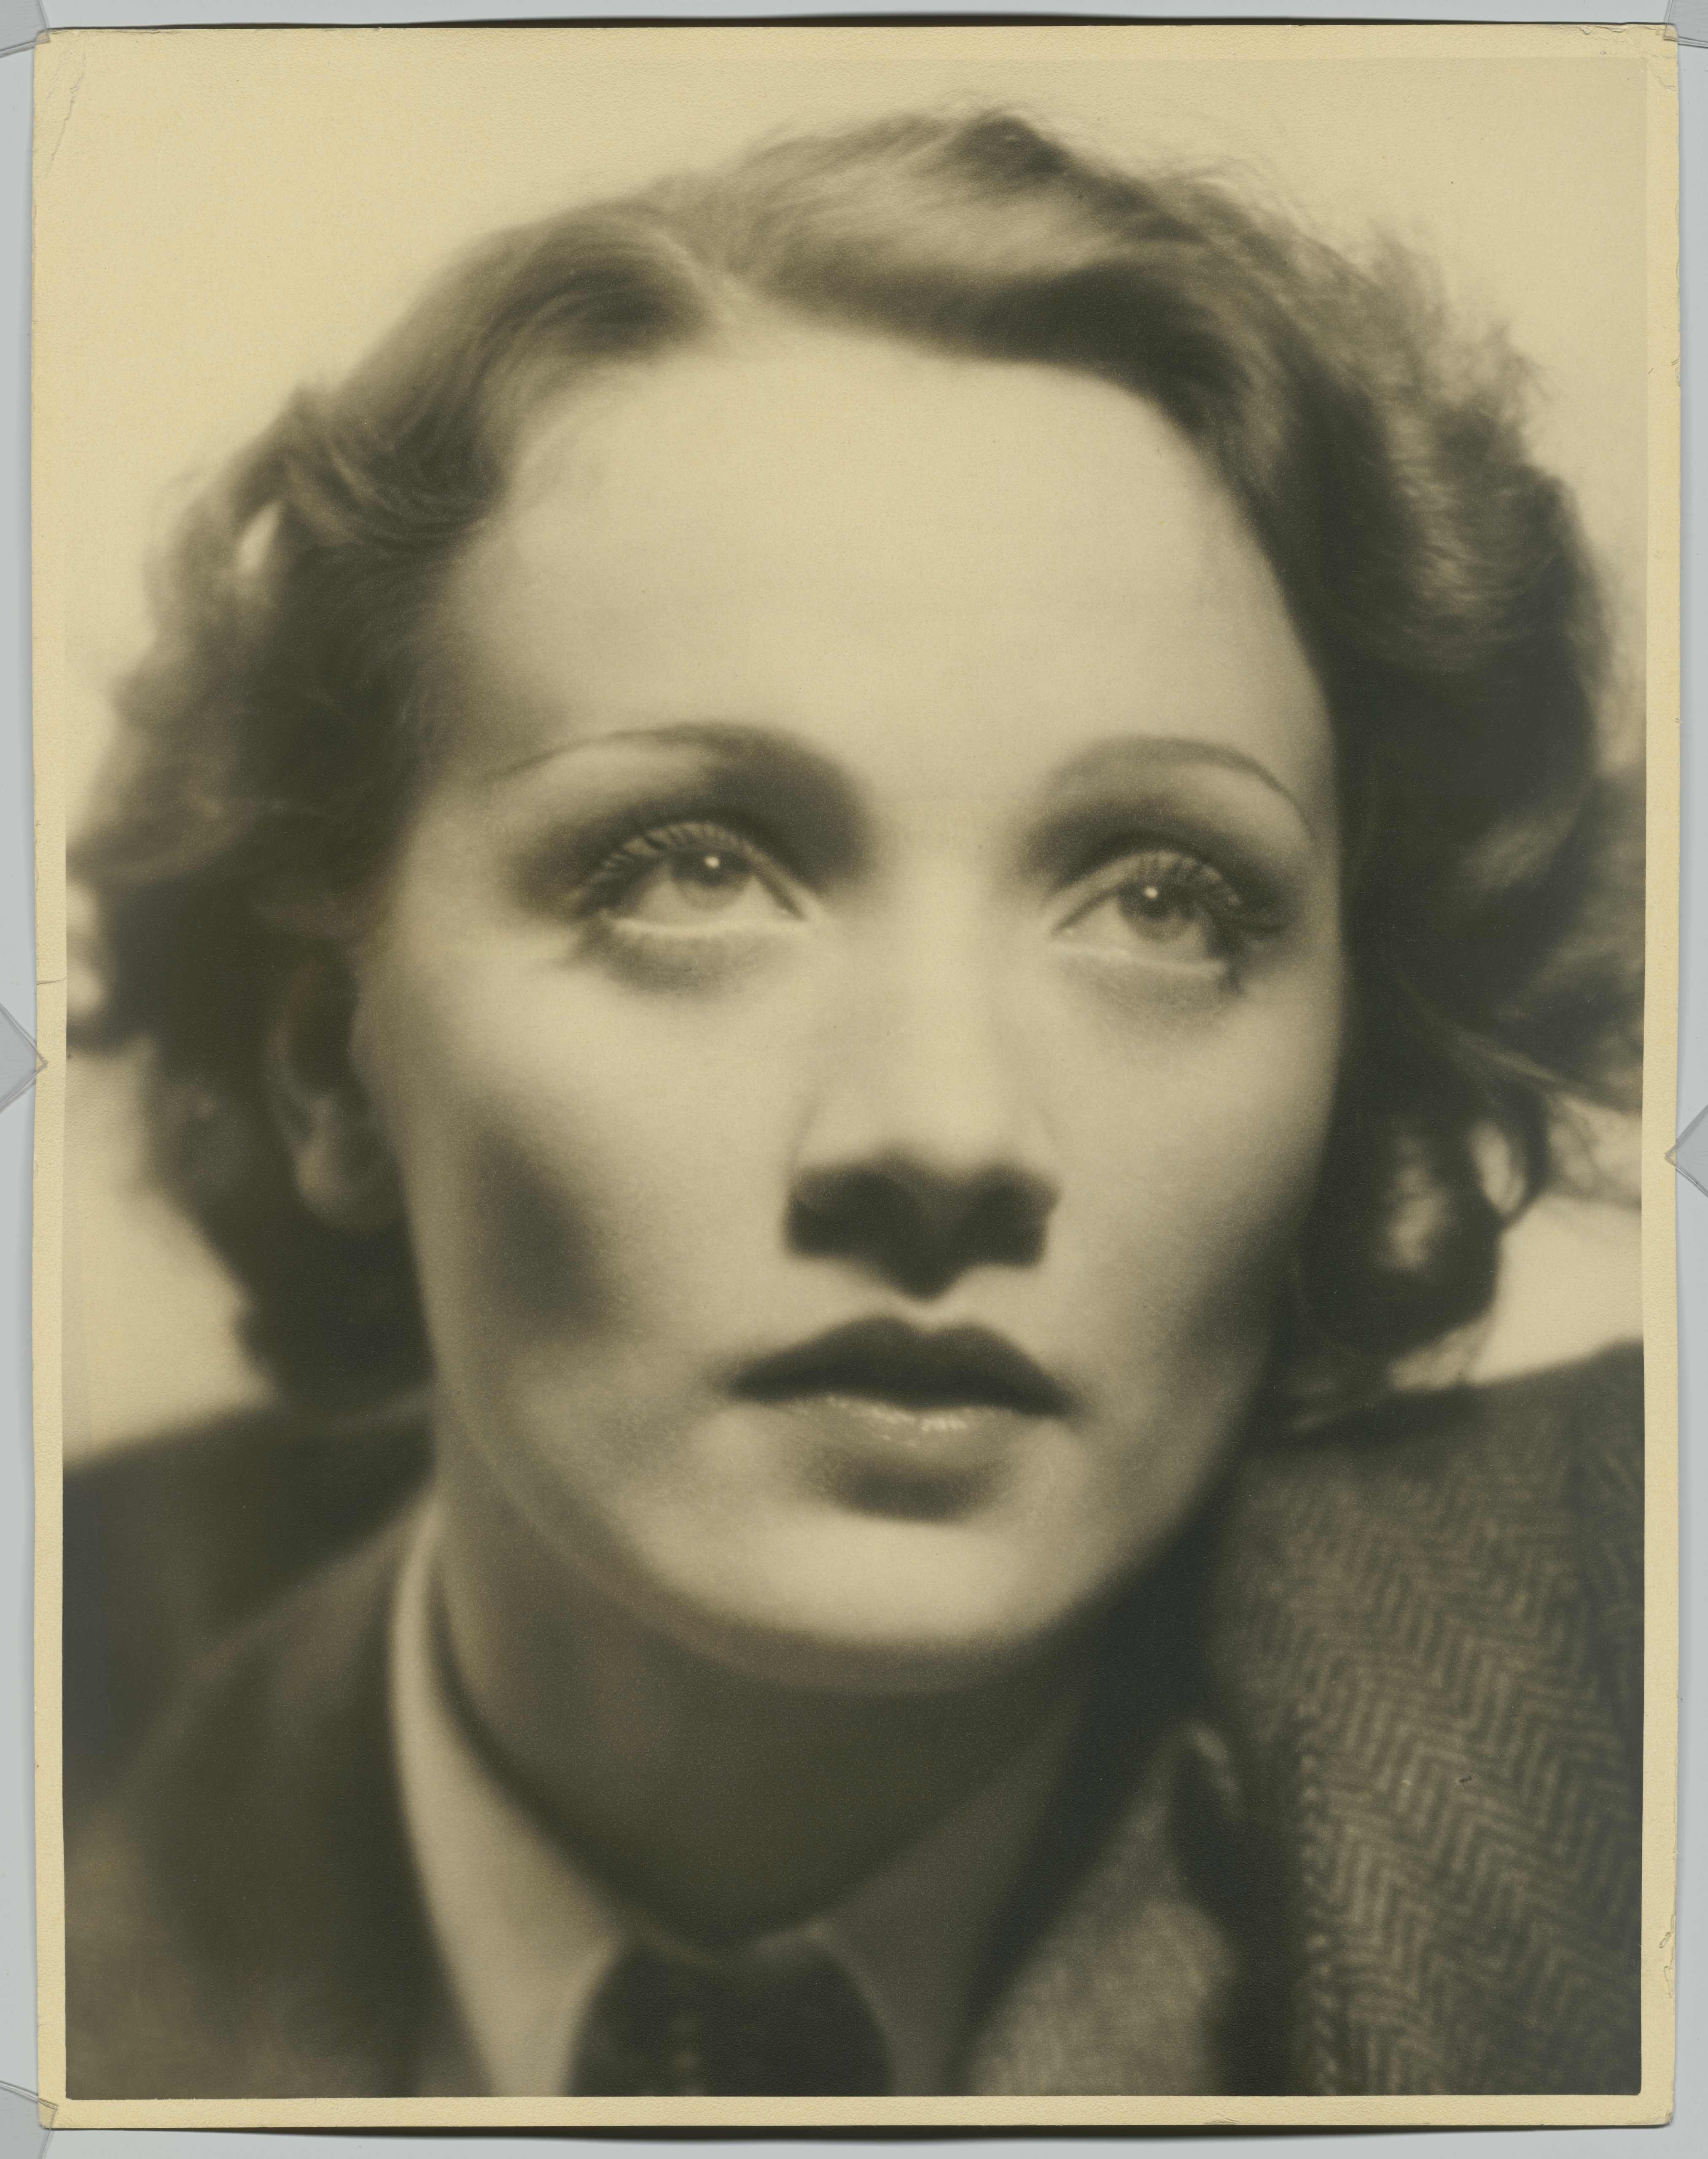 Portrait photo of Marlene Dietrich, Photo: Eugene Robert Richee